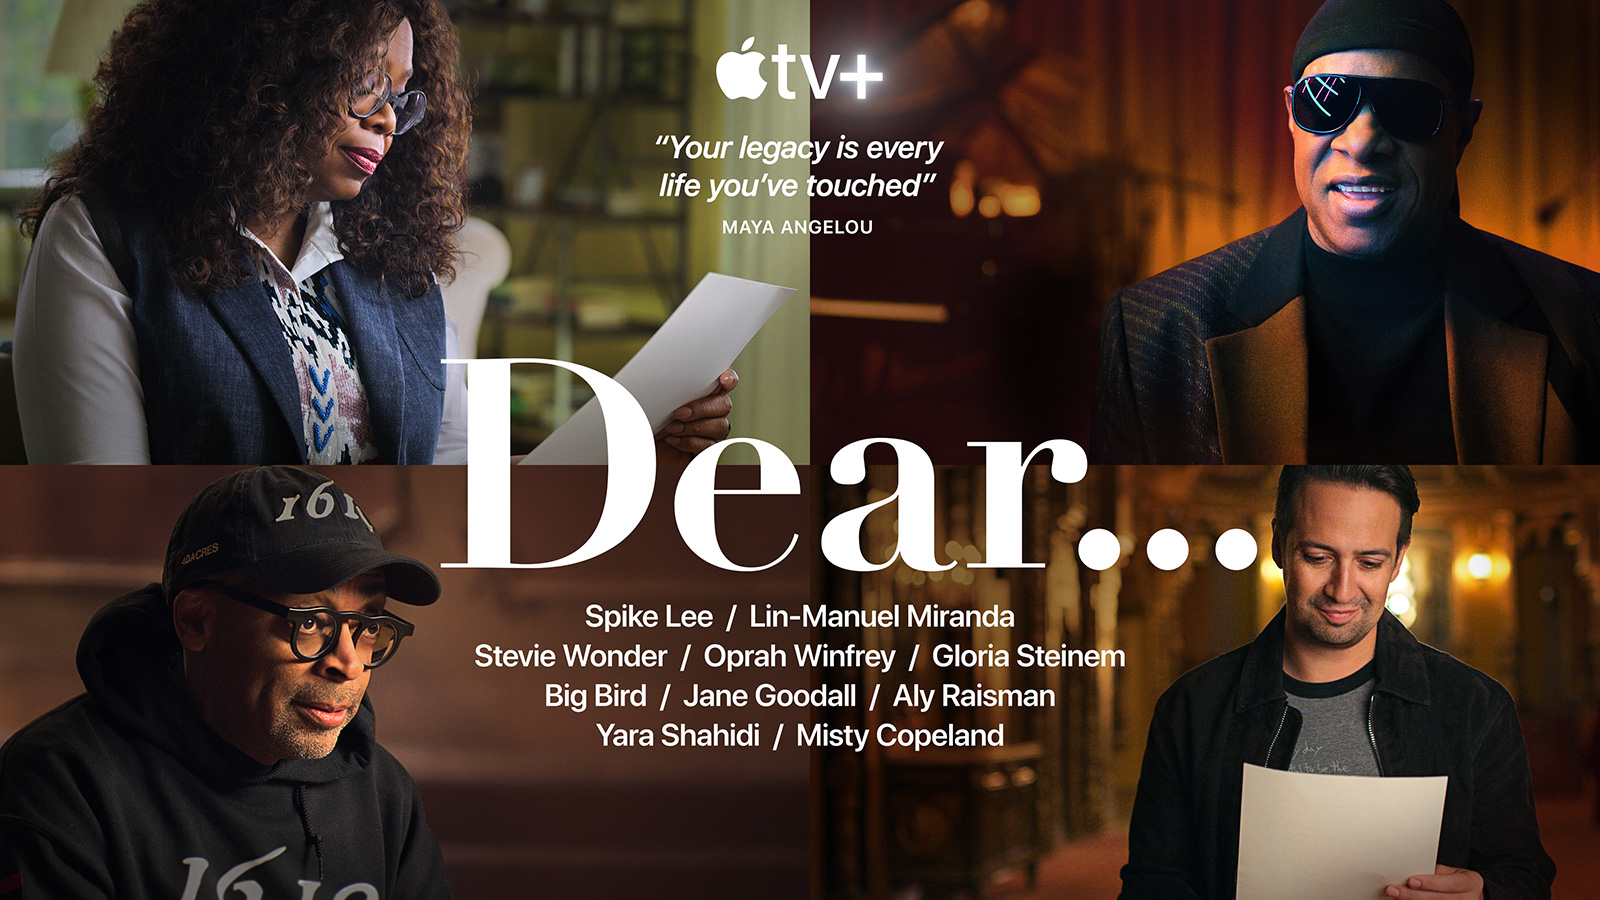 Apple ปล่อยเทรลเลอร์ของซีรีส์แนวสารคดีที่สร้างแรงบันดาลใจเรื่องใหม่ “Dear...”